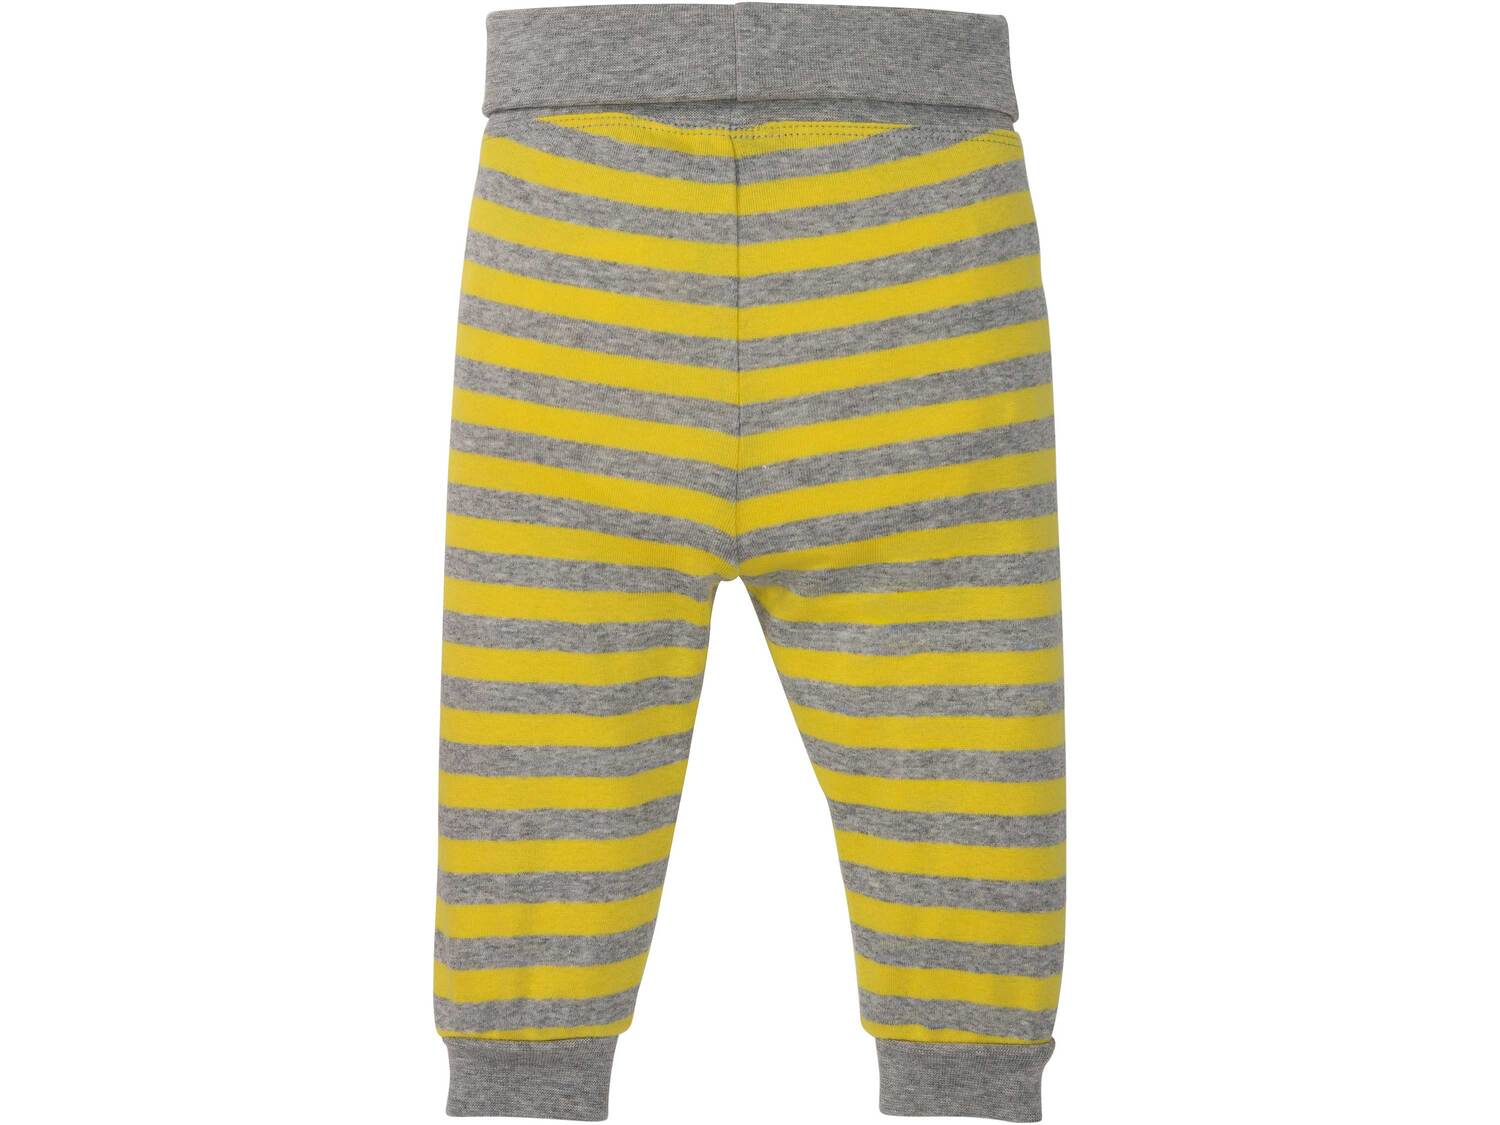 Spodnie niemowlęce z bawełny Lupilu, cena 9,99 PLN 
- rozmiary: 62-92
- 100% bawełny
- ...